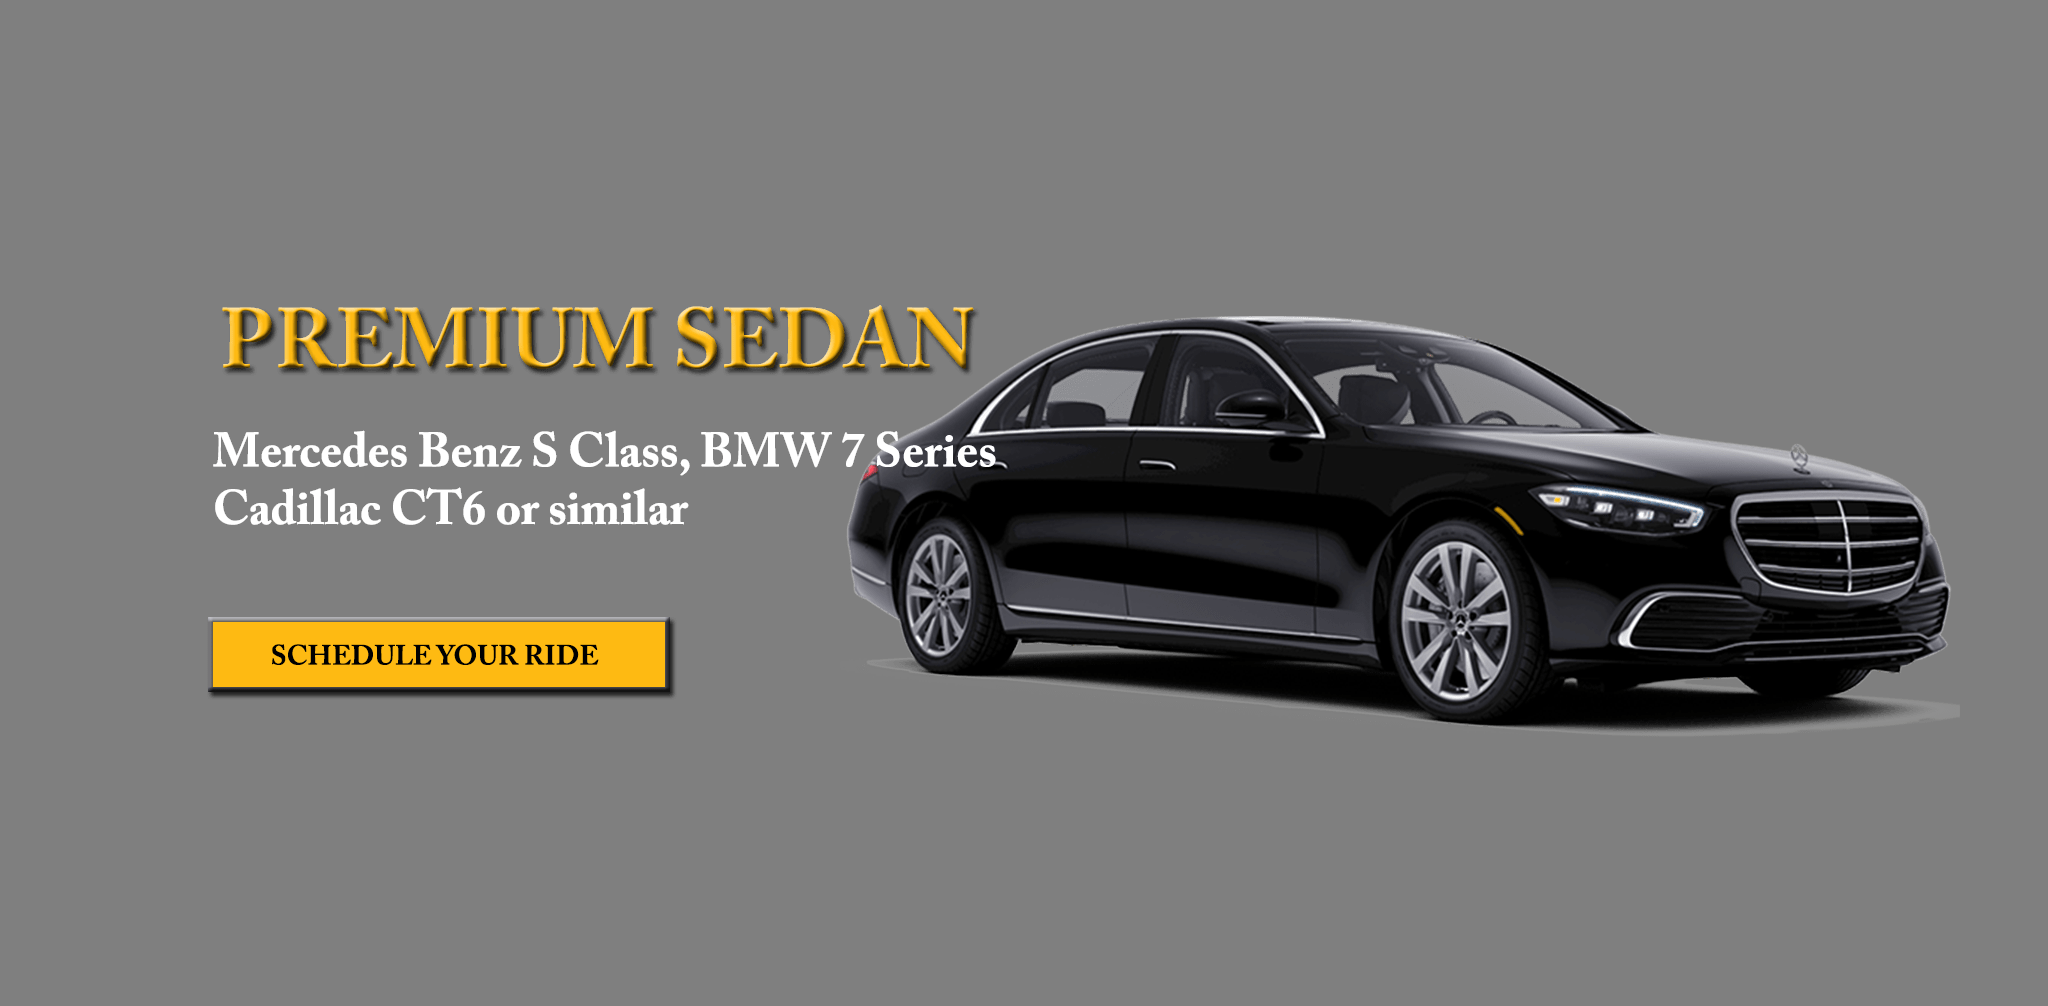 Premium Sedan